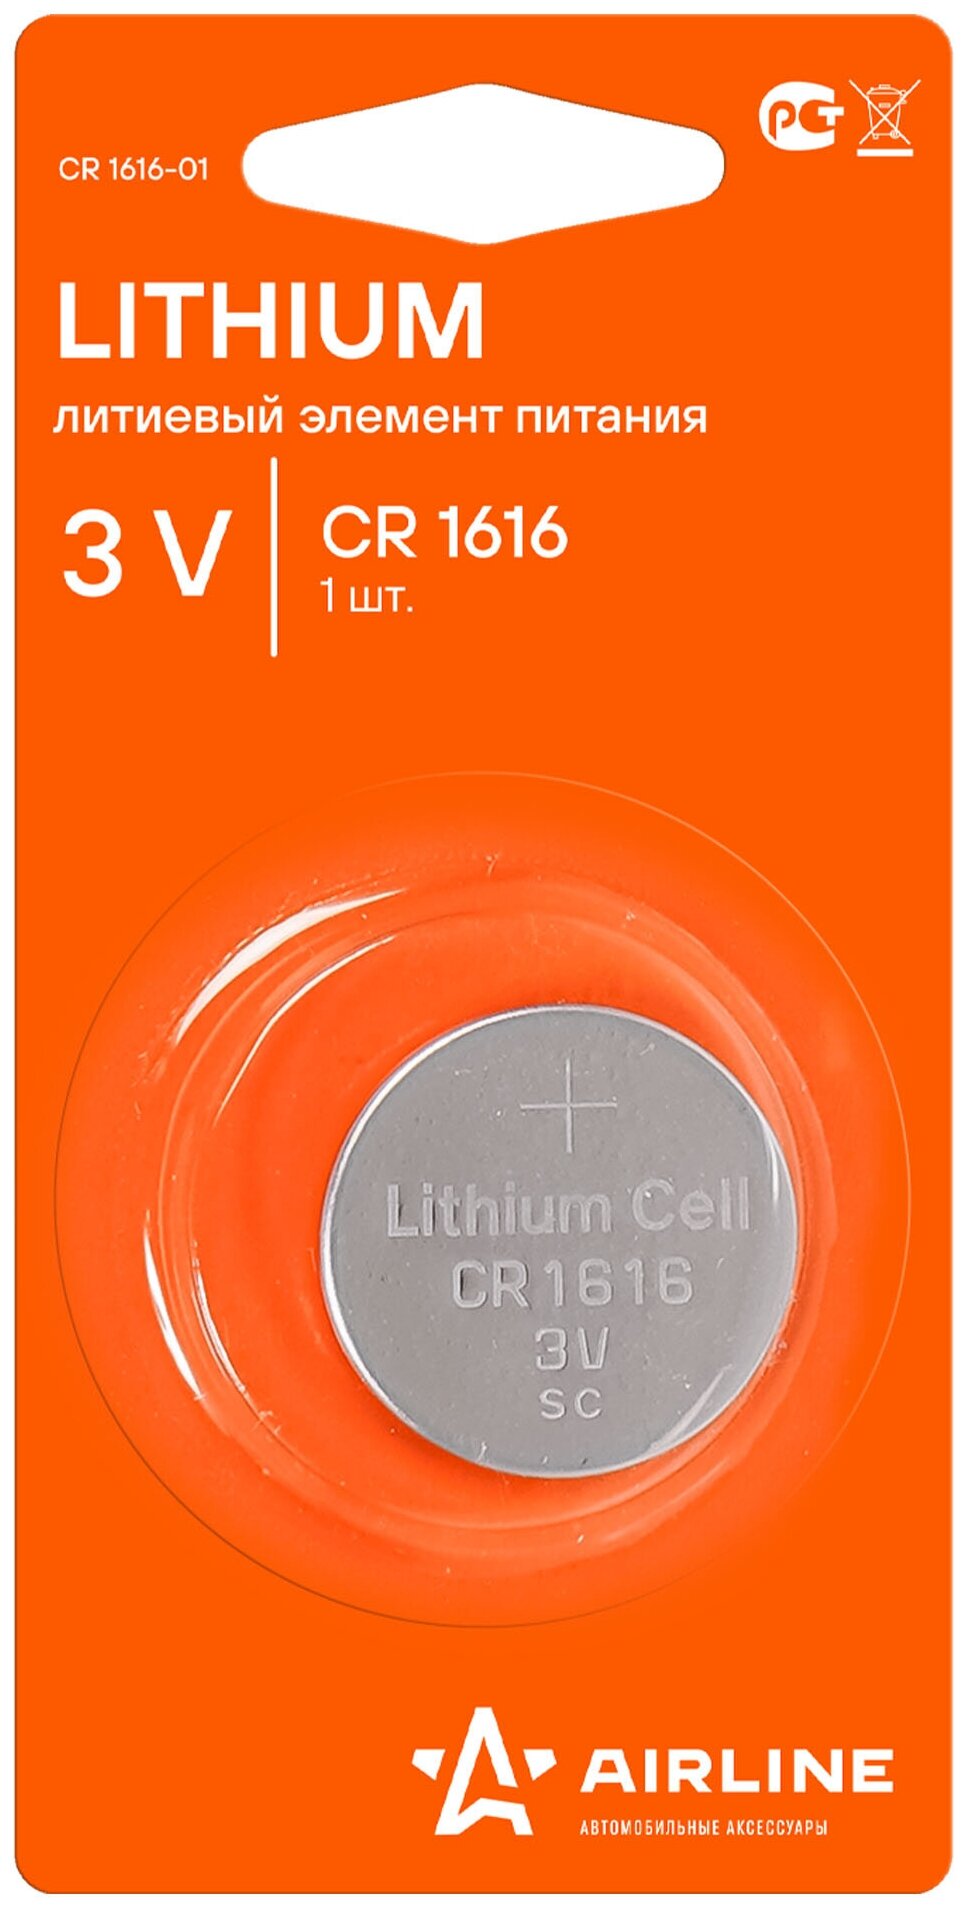 Батарейка CR1616 3V для брелоков сигнализаций литиевая 1 шт.